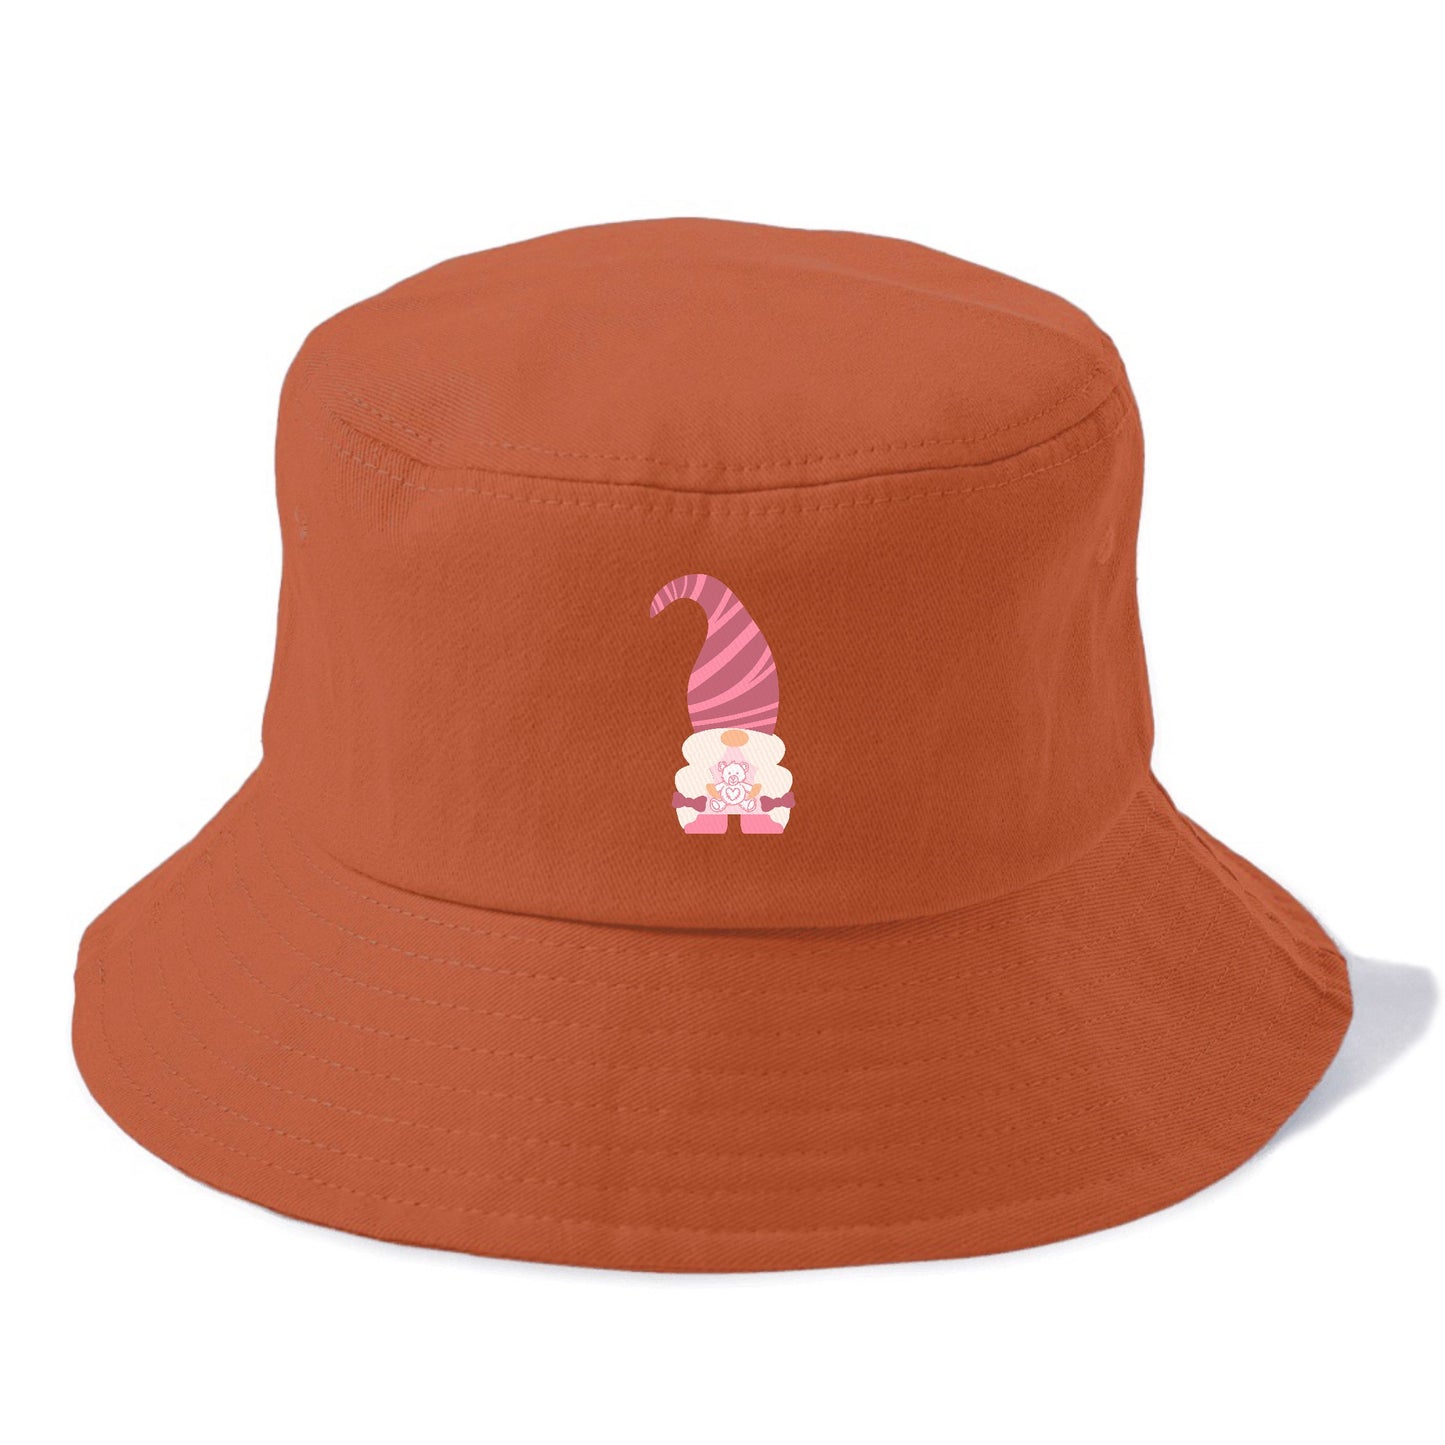 Valentine's dwarf 3 Hat